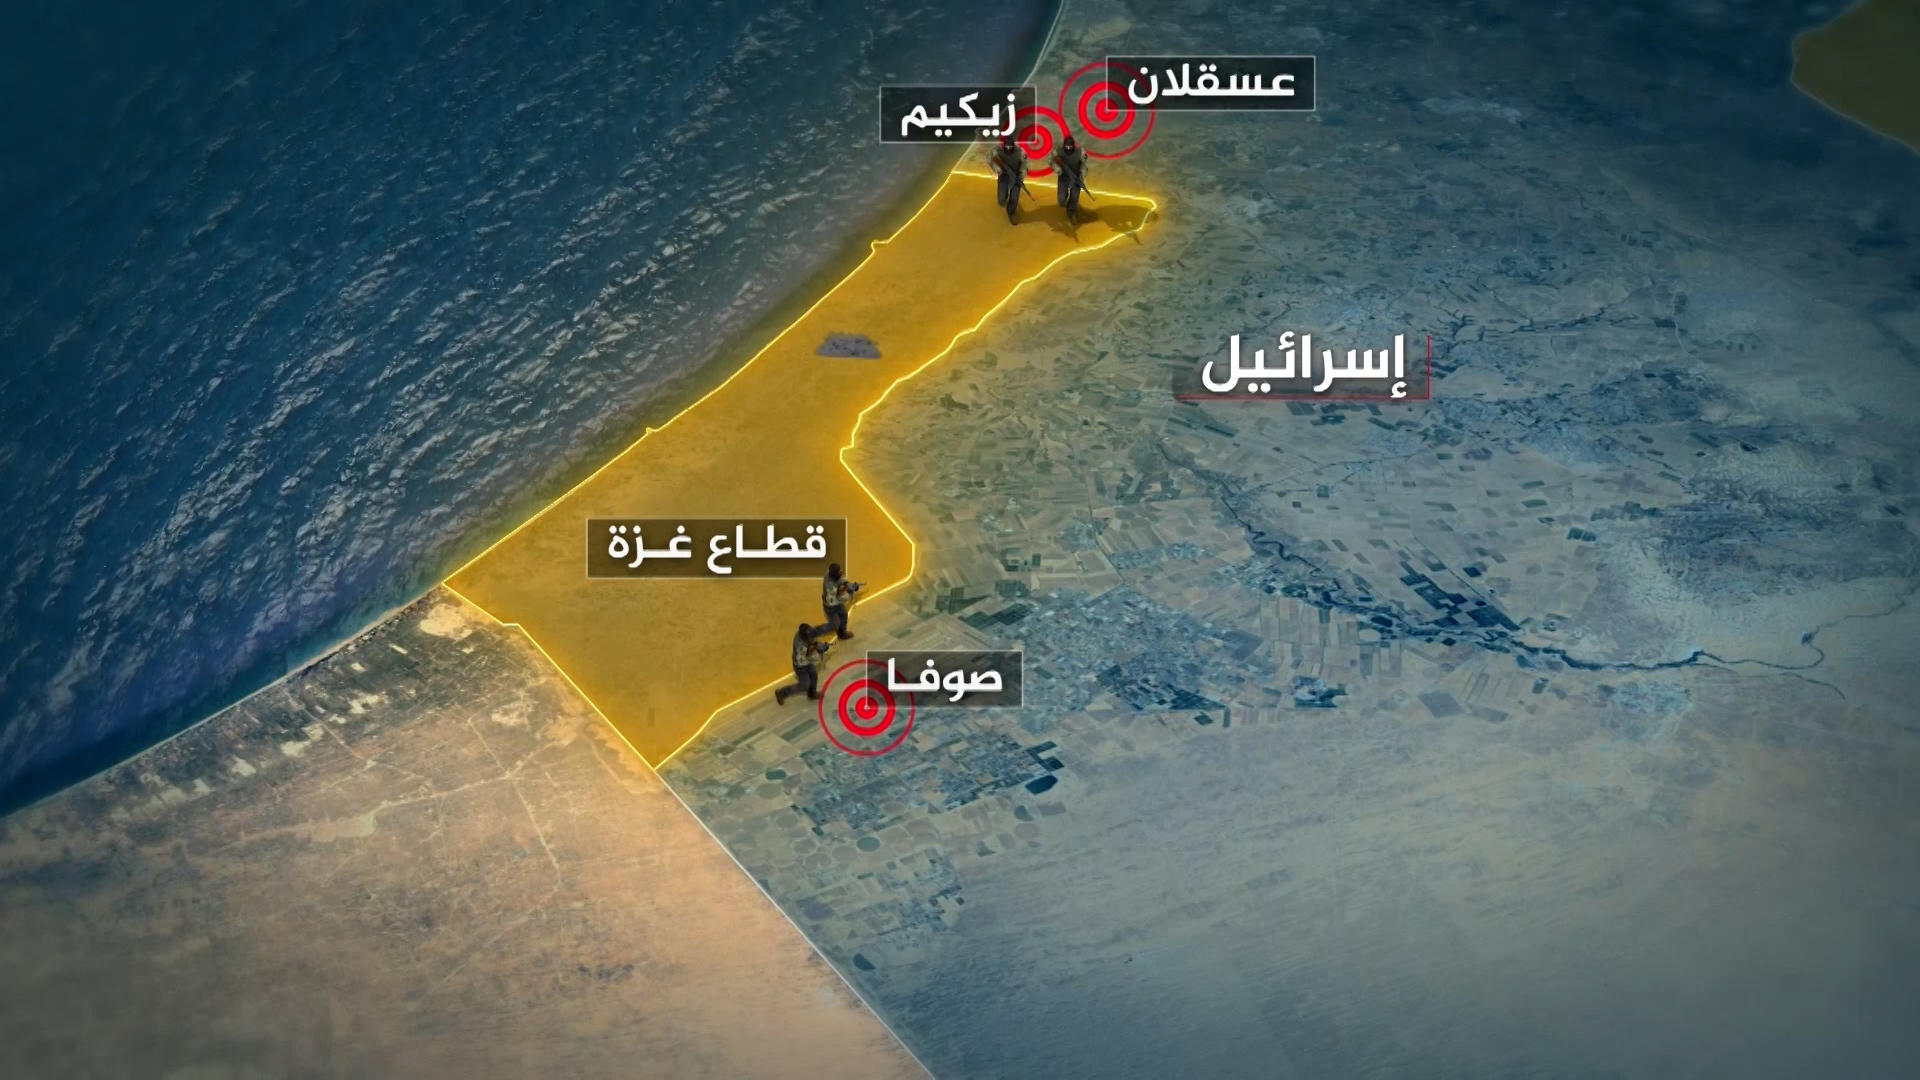 غزة منطقة مغلقة والدخول إليها “خطر جسيم”.. ما آخر تطورات “طوفان الأقصى”؟ | البرامج – البوكس نيوز